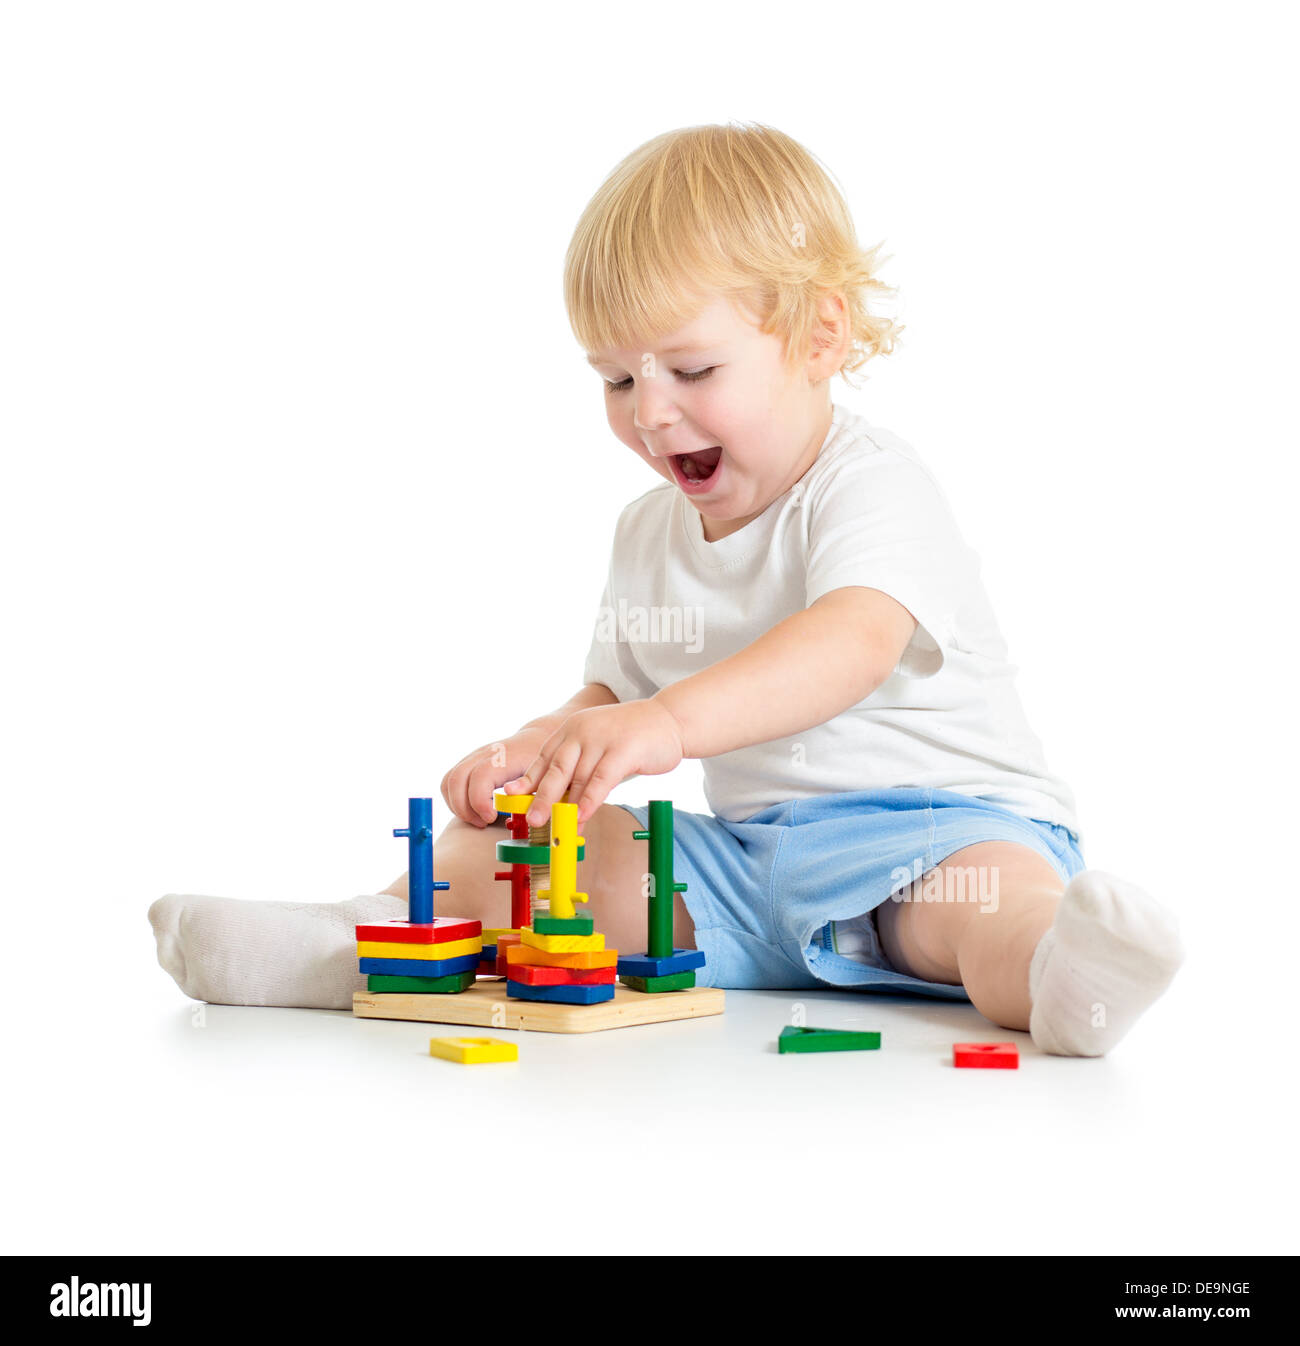 Jeu pour Enfants de l'éducation logique jouets avec beaucoup d'intérêt Banque D'Images